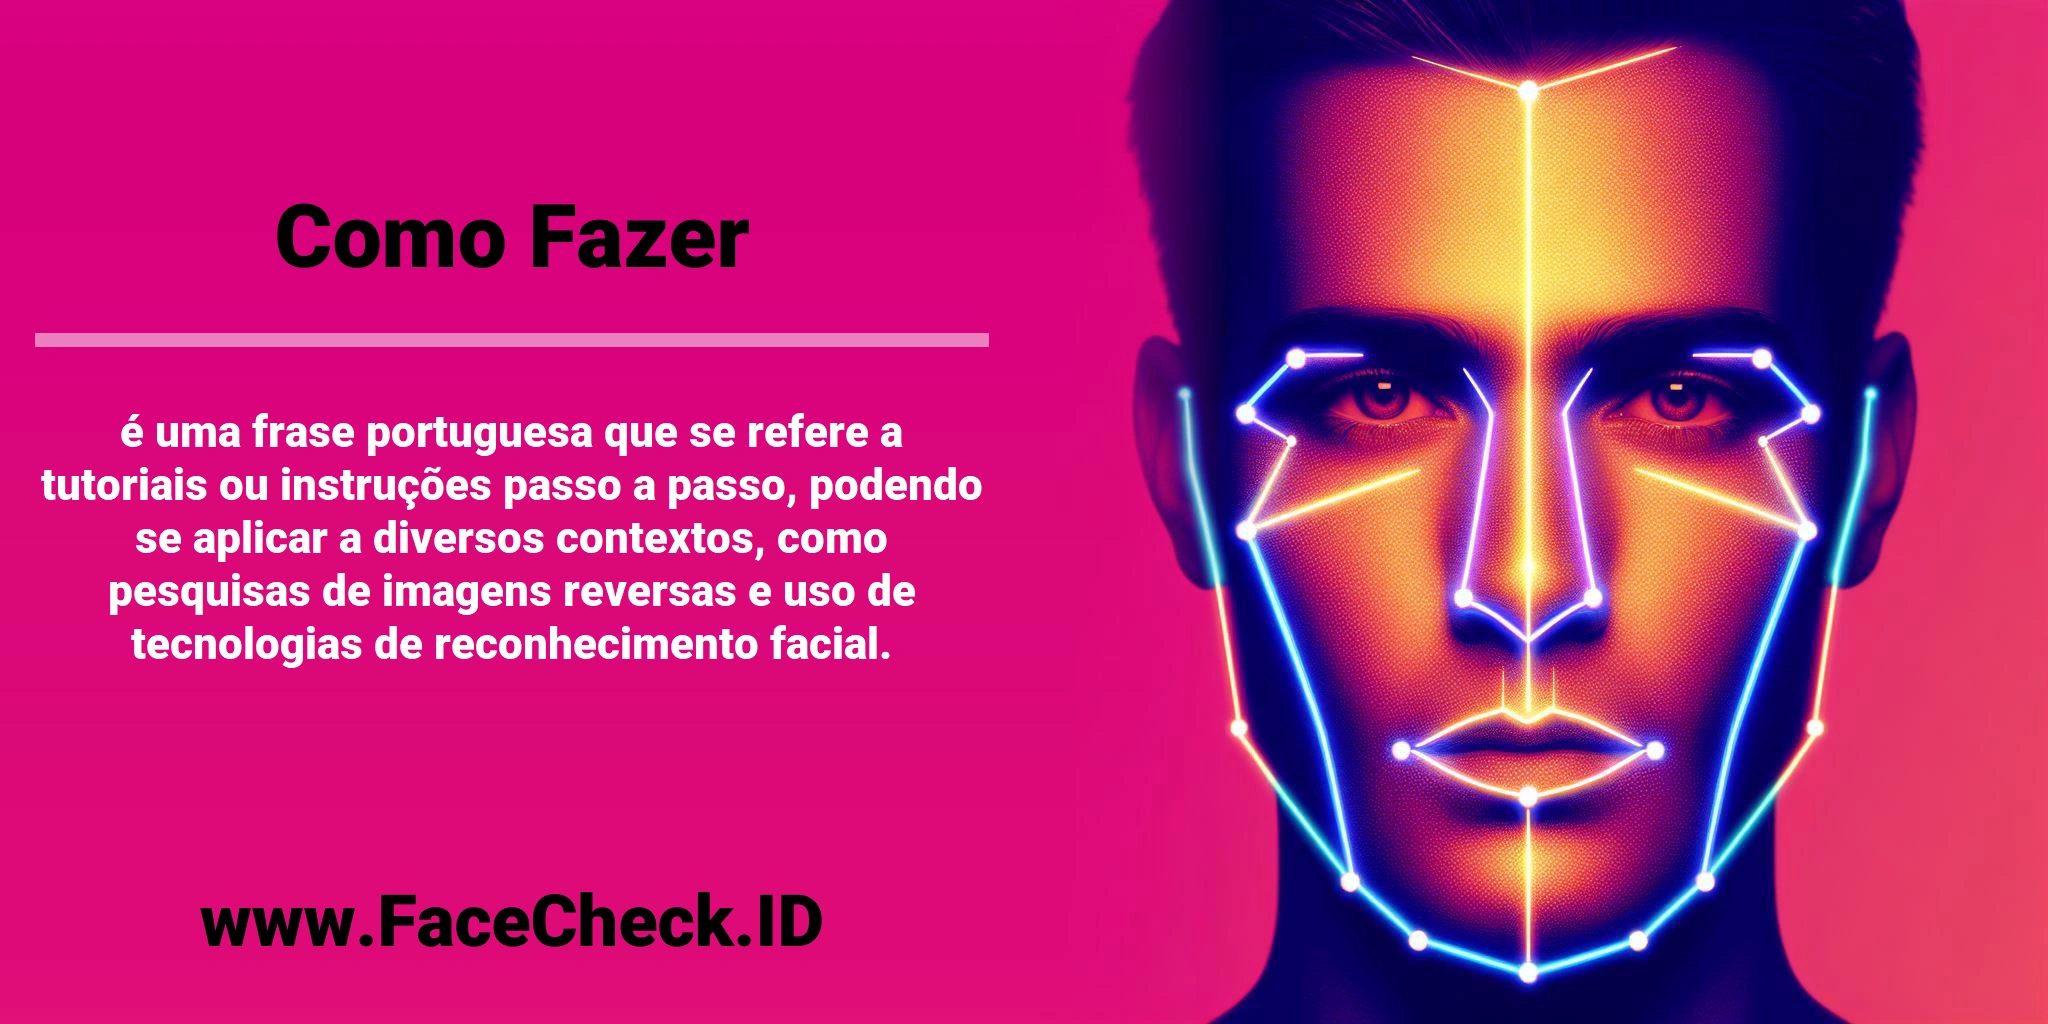 <b>Como Fazer</b> é uma frase portuguesa que se refere a tutoriais ou instruções passo a passo, podendo se aplicar a diversos contextos, como pesquisas de imagens reversas e uso de tecnologias de reconhecimento facial.